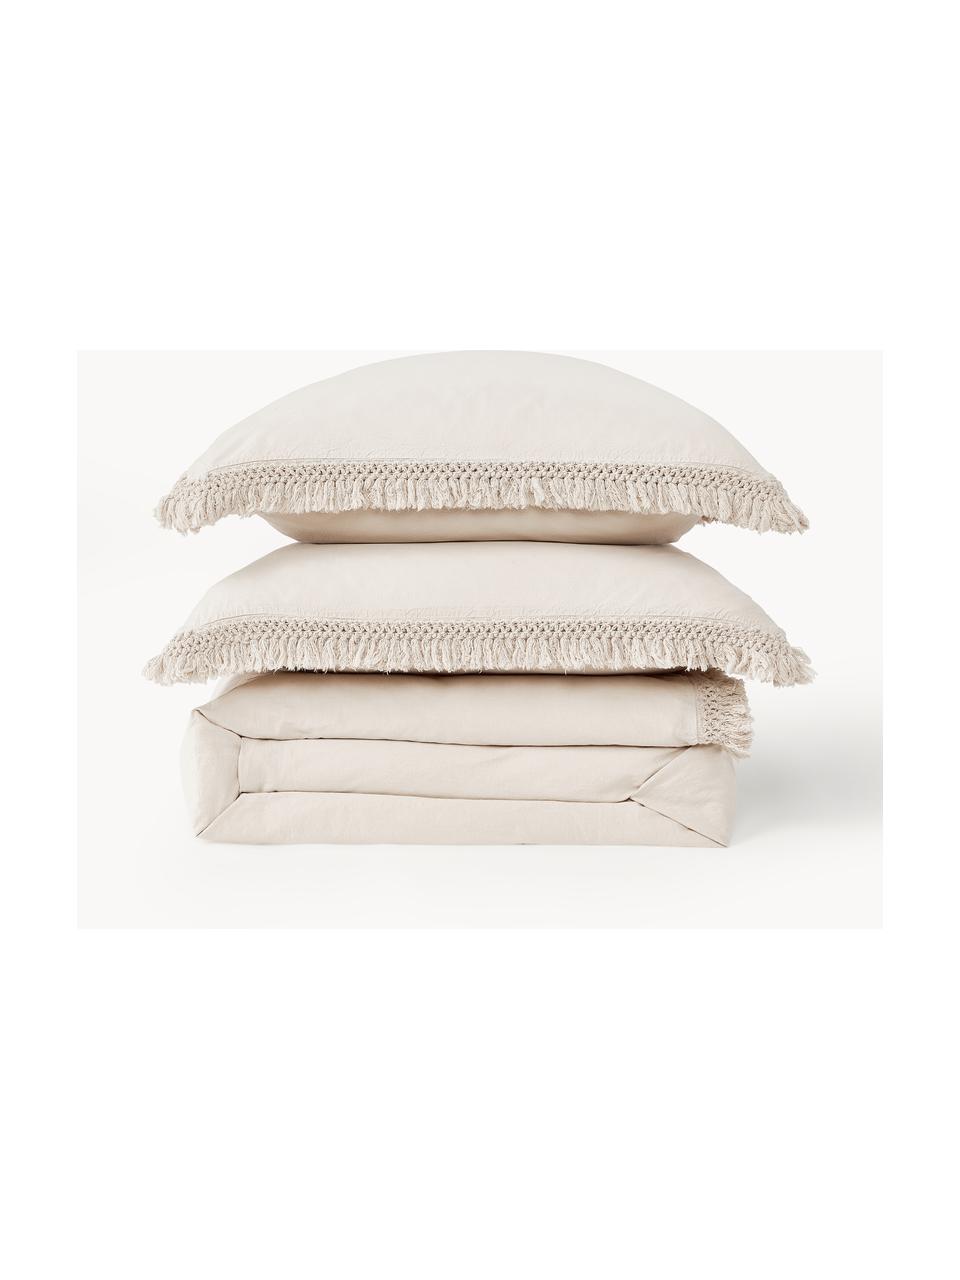 Bavlnená obliečka na paplón so strapcami Abra, 100 % bavlna
Hustota vlákna 165 TC, kvalita štandard

Posteľná bielizeň z bavlny je príjemná na dotyk, dobre absorbuje vlhkosť a je vhodná pre alergikov

Vďaka farbeniu odevov je látka mäkká a pružná na dotyk, vďaka čomu je táto posteľná bielizeň obzvlášť očarujúca.

Materiál použitý v tomto výrobku bol testovaný na škodlivé látky a certifikovaný podľa STANDARD 100 by OEKO-TEX® (10817CIT, CITEVE)., Béžová, Š 200 x D 200 cm